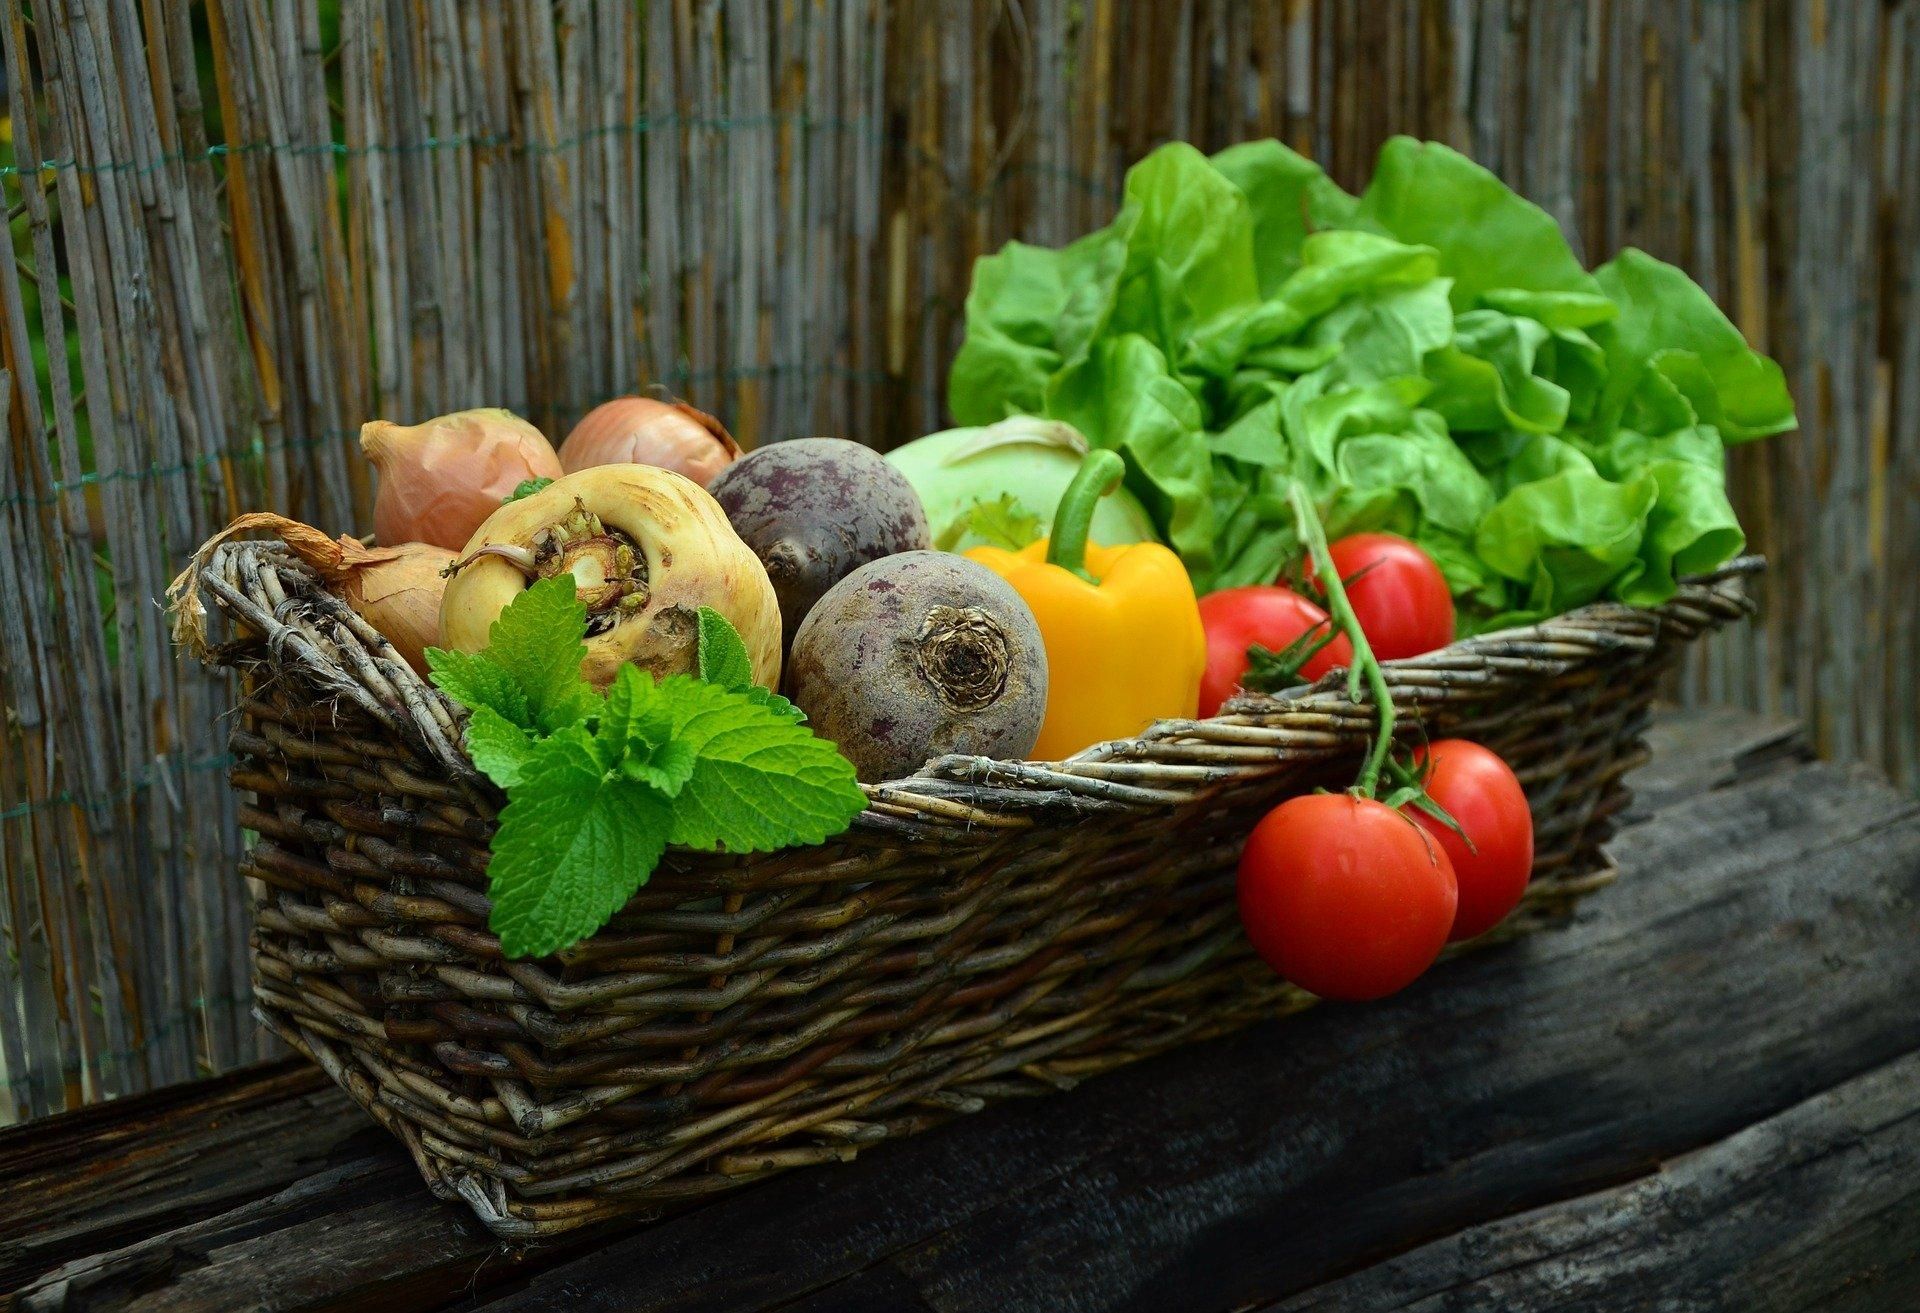 Ученые назвали тип овощей, что повышает риск рака желудка - Тренды